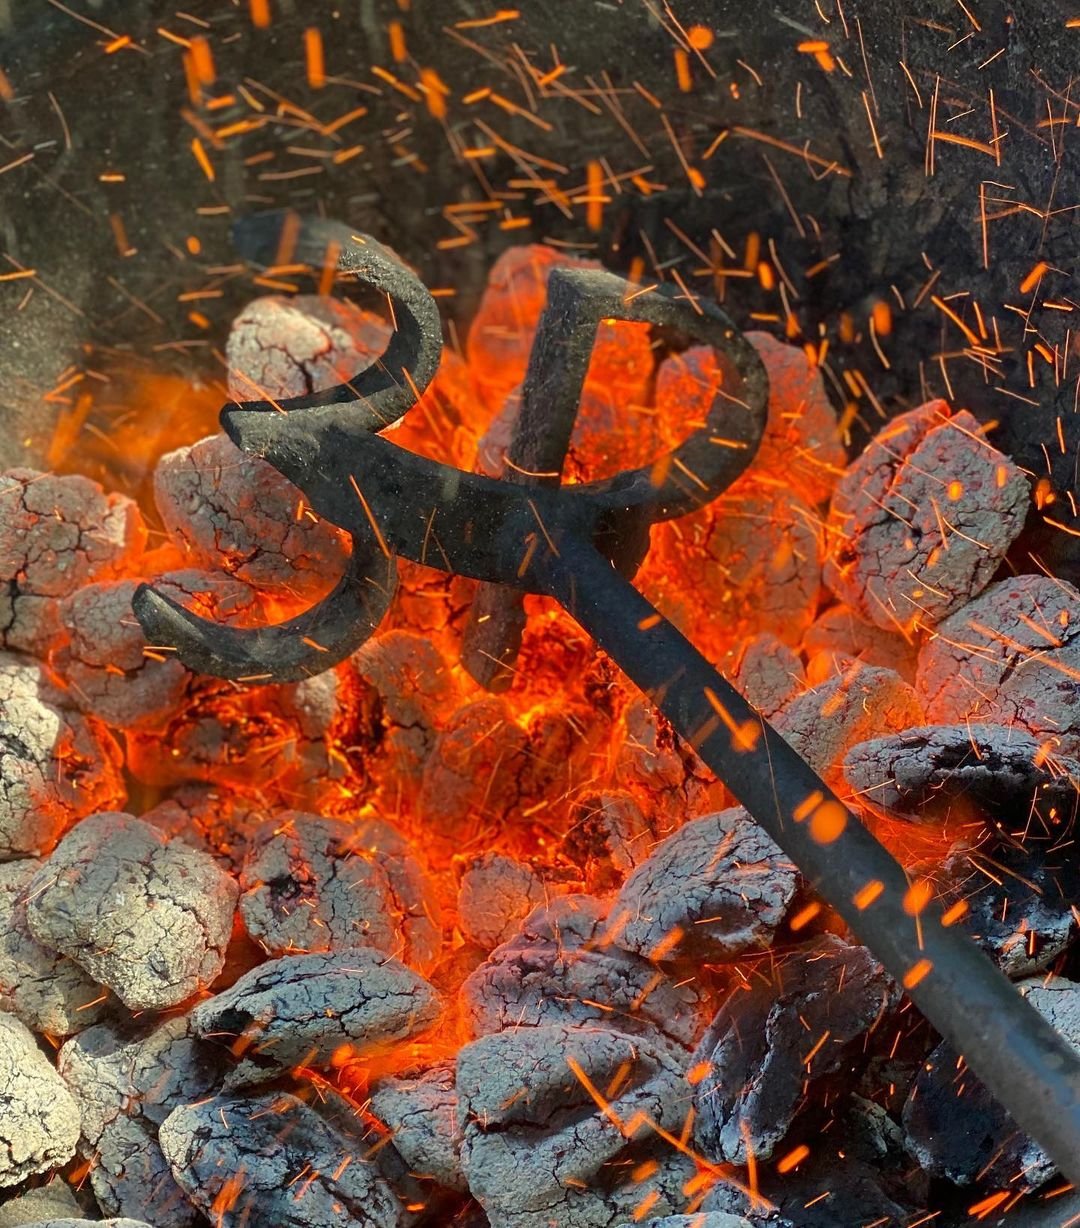 Hot coals heating up a 3P branding rod